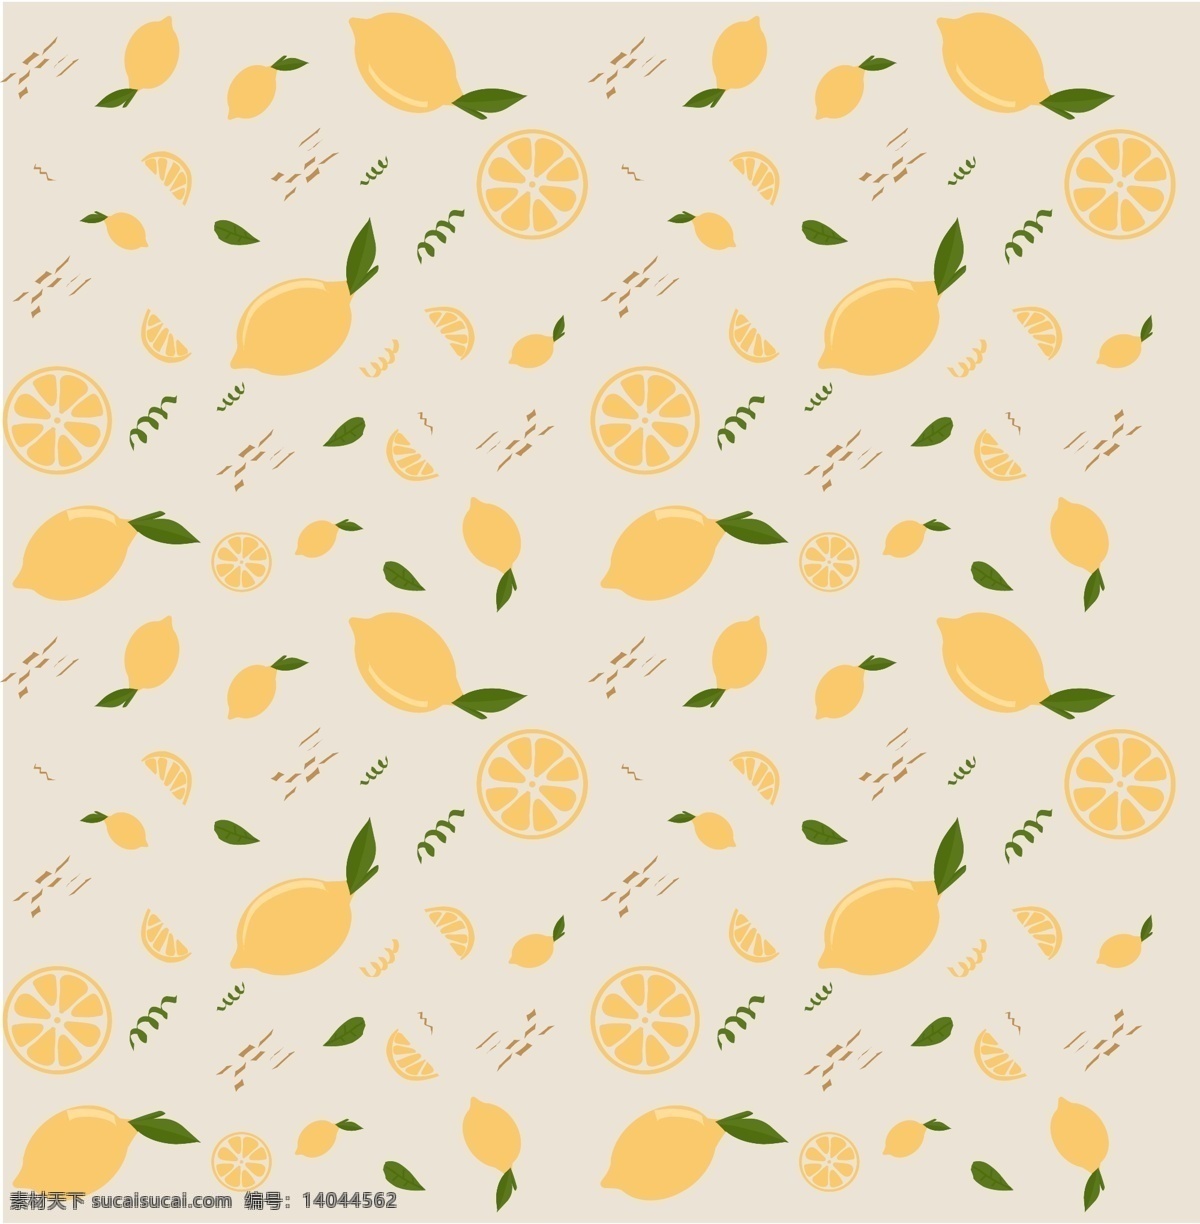 柠檬背景图片 柠檬 背景 水果 生鲜 酸 橘子 橙子